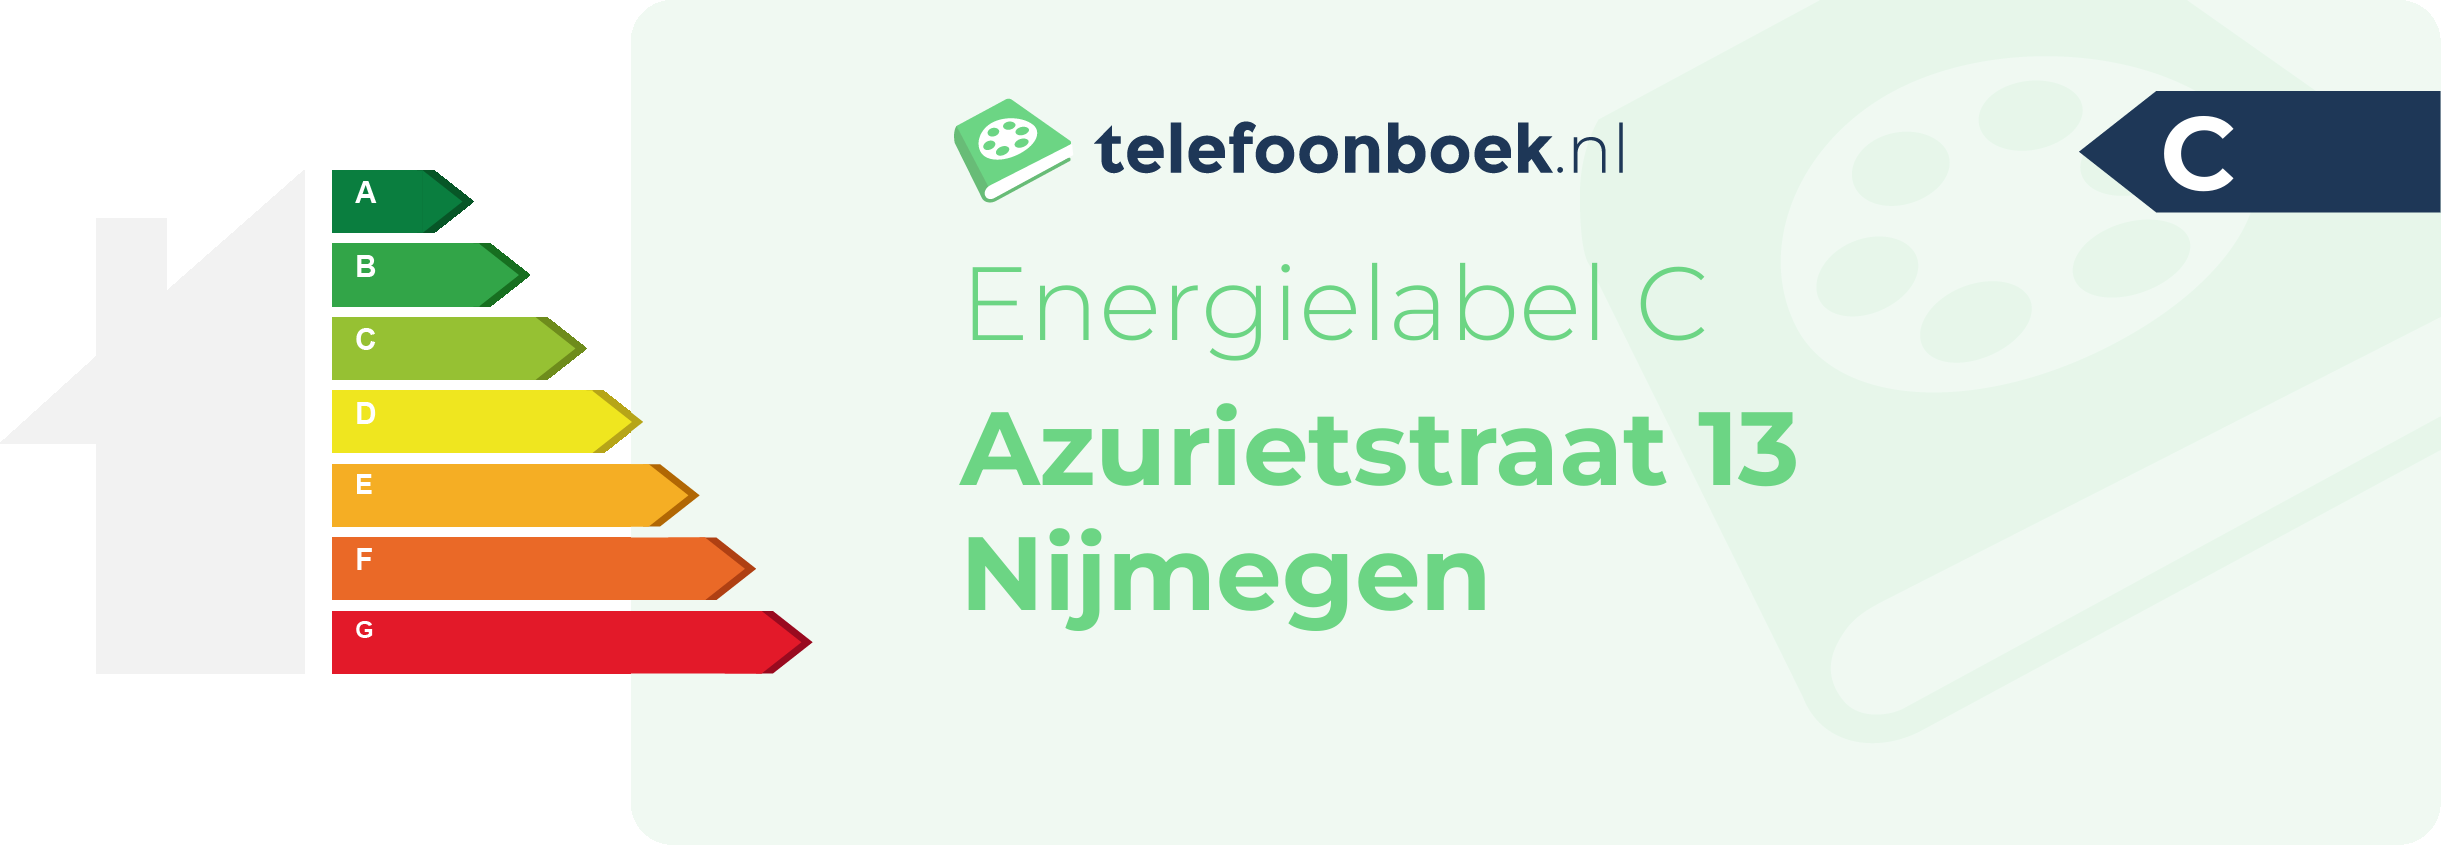 Energielabel Azurietstraat 13 Nijmegen